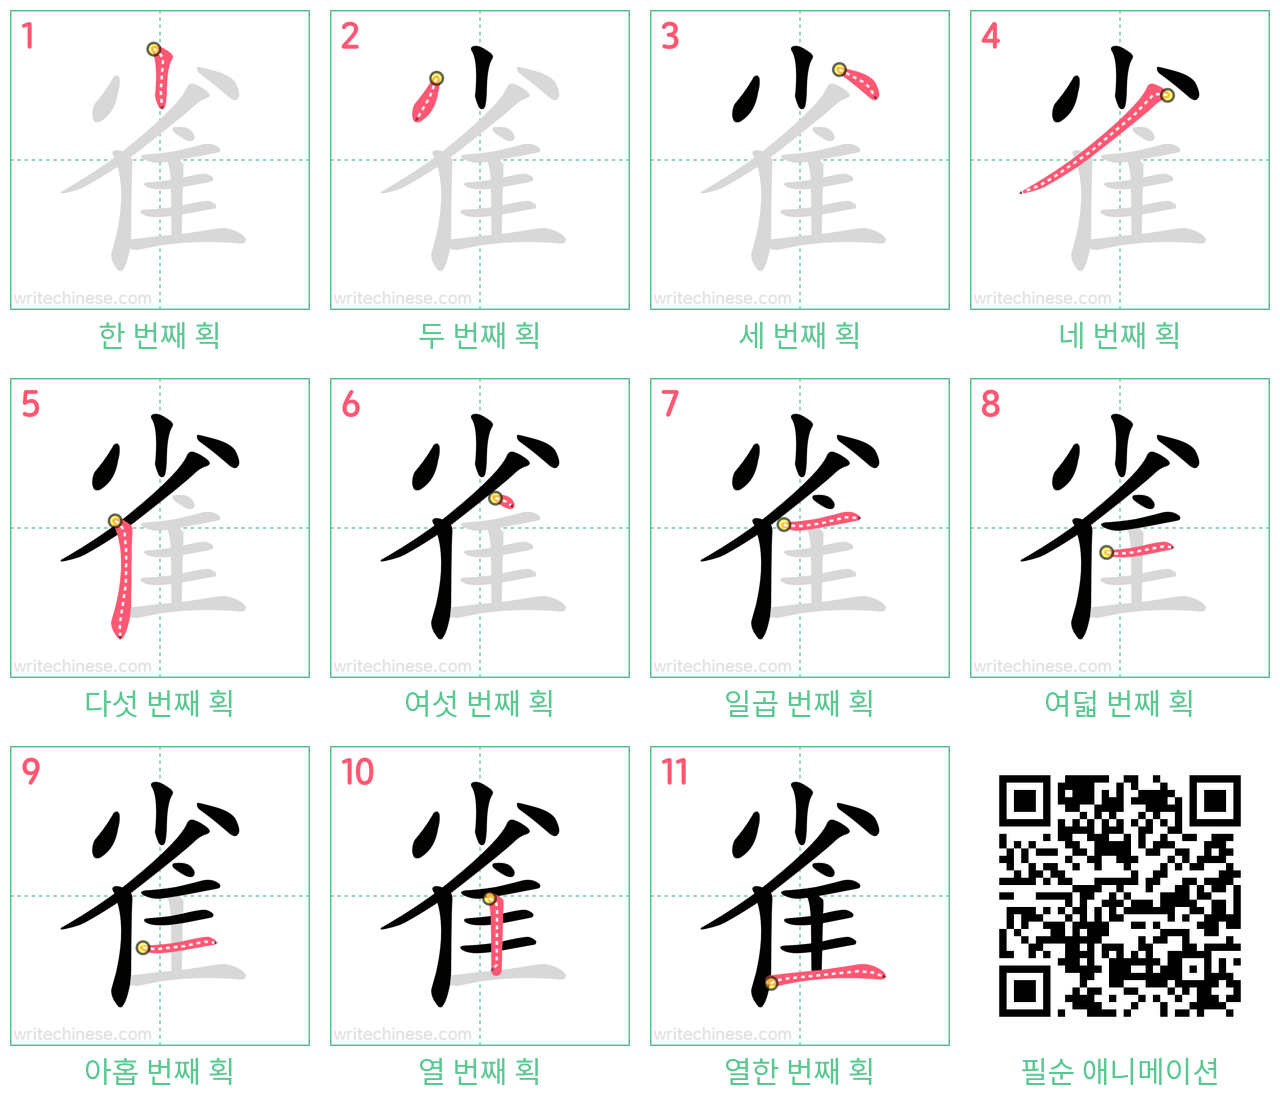 雀 step-by-step stroke order diagrams